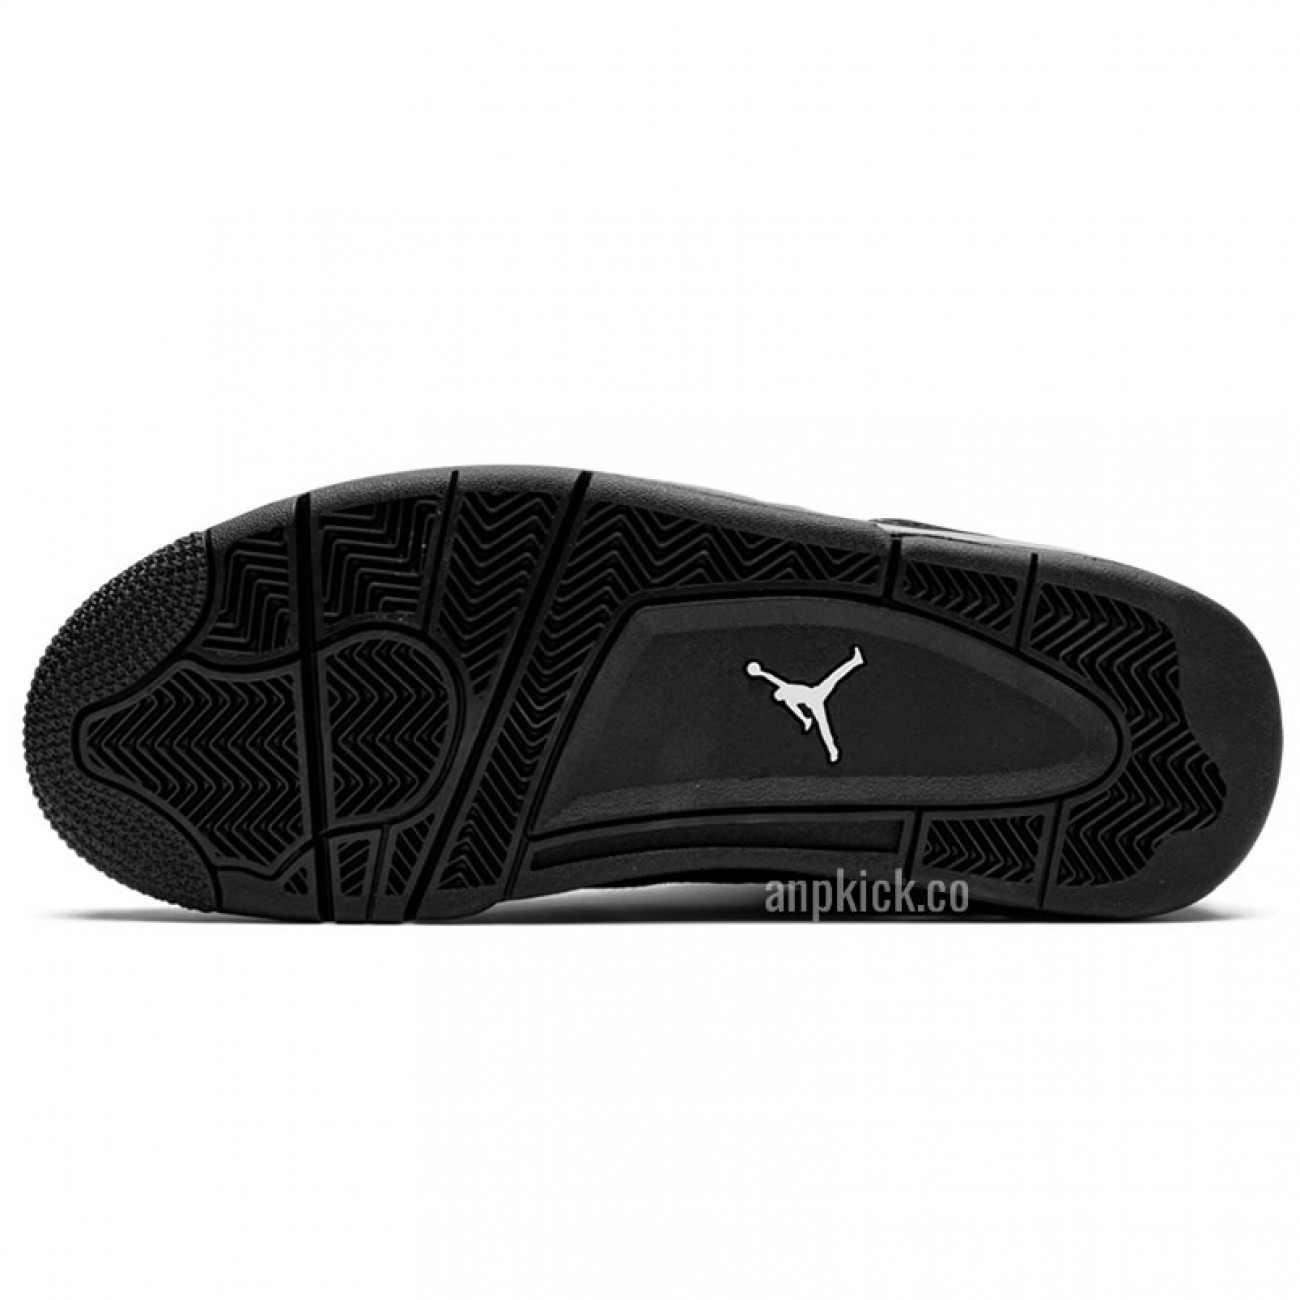 Air Jordan 4 Retro "Black Cat" 2020 For Sale CU1110-010